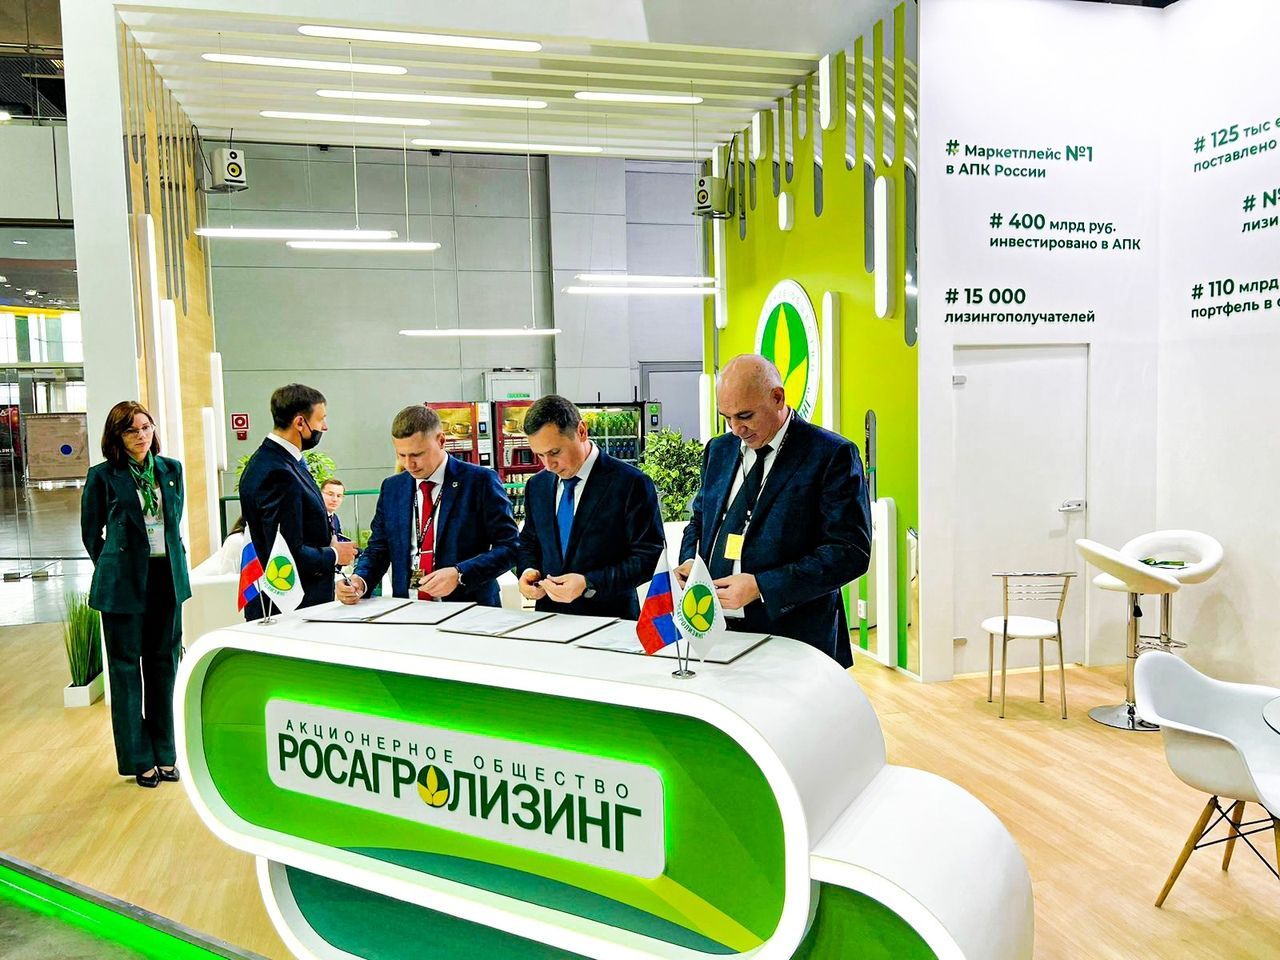  Компания «Старожиловоагроснаб» подписала соглашение по расширению парка машинно-технологической компании.